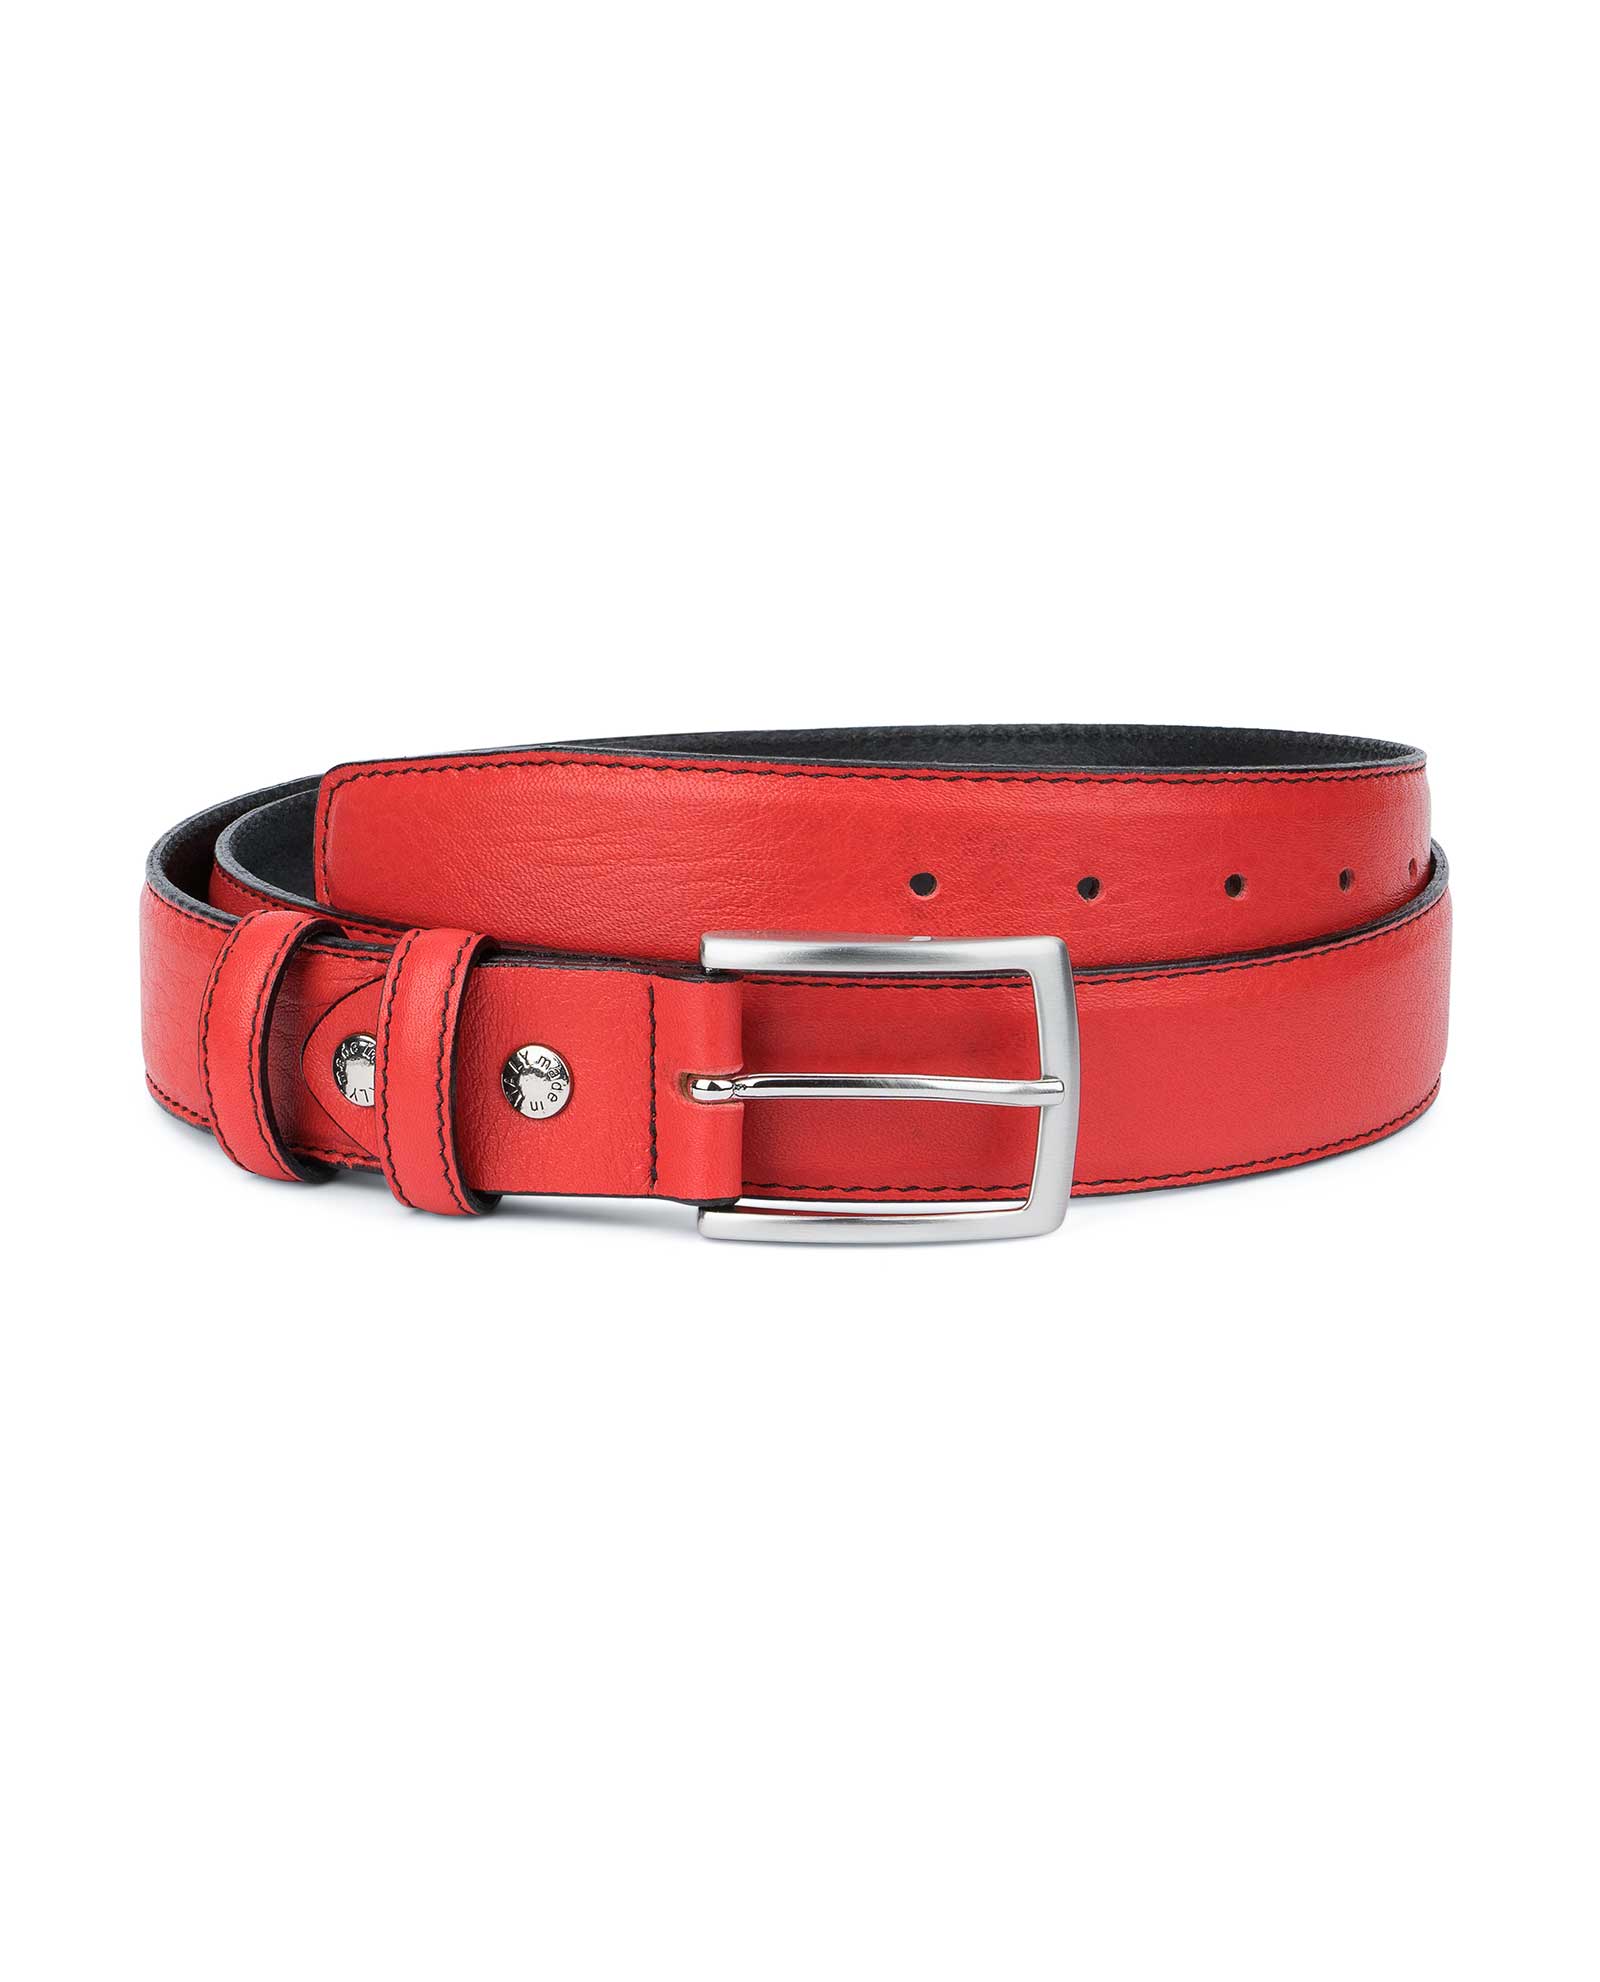 Men's Leather Belt | Smooth Soft |